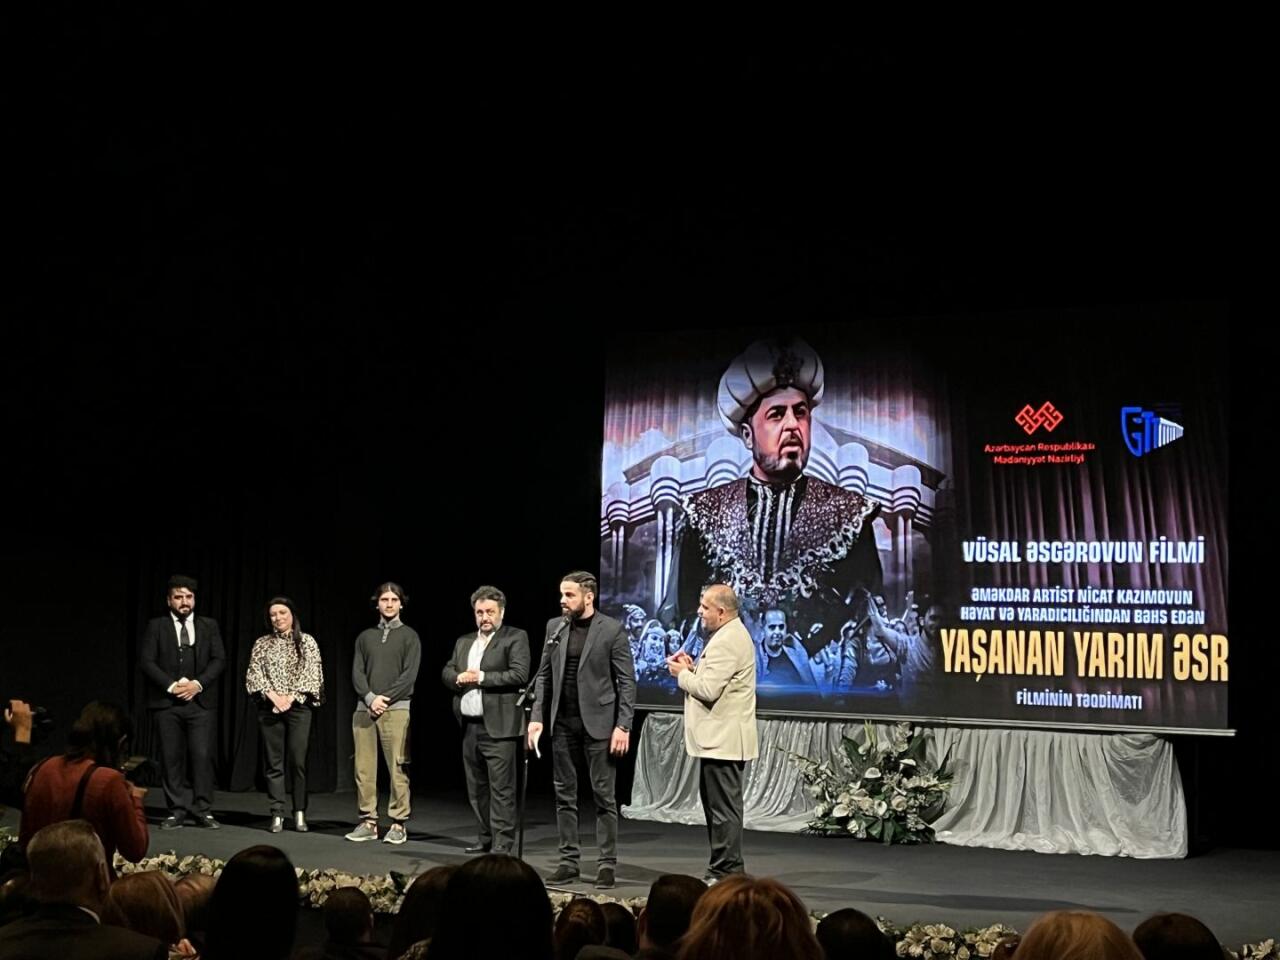 В Баку показали фильм, посвященный Ниджату Кязымову